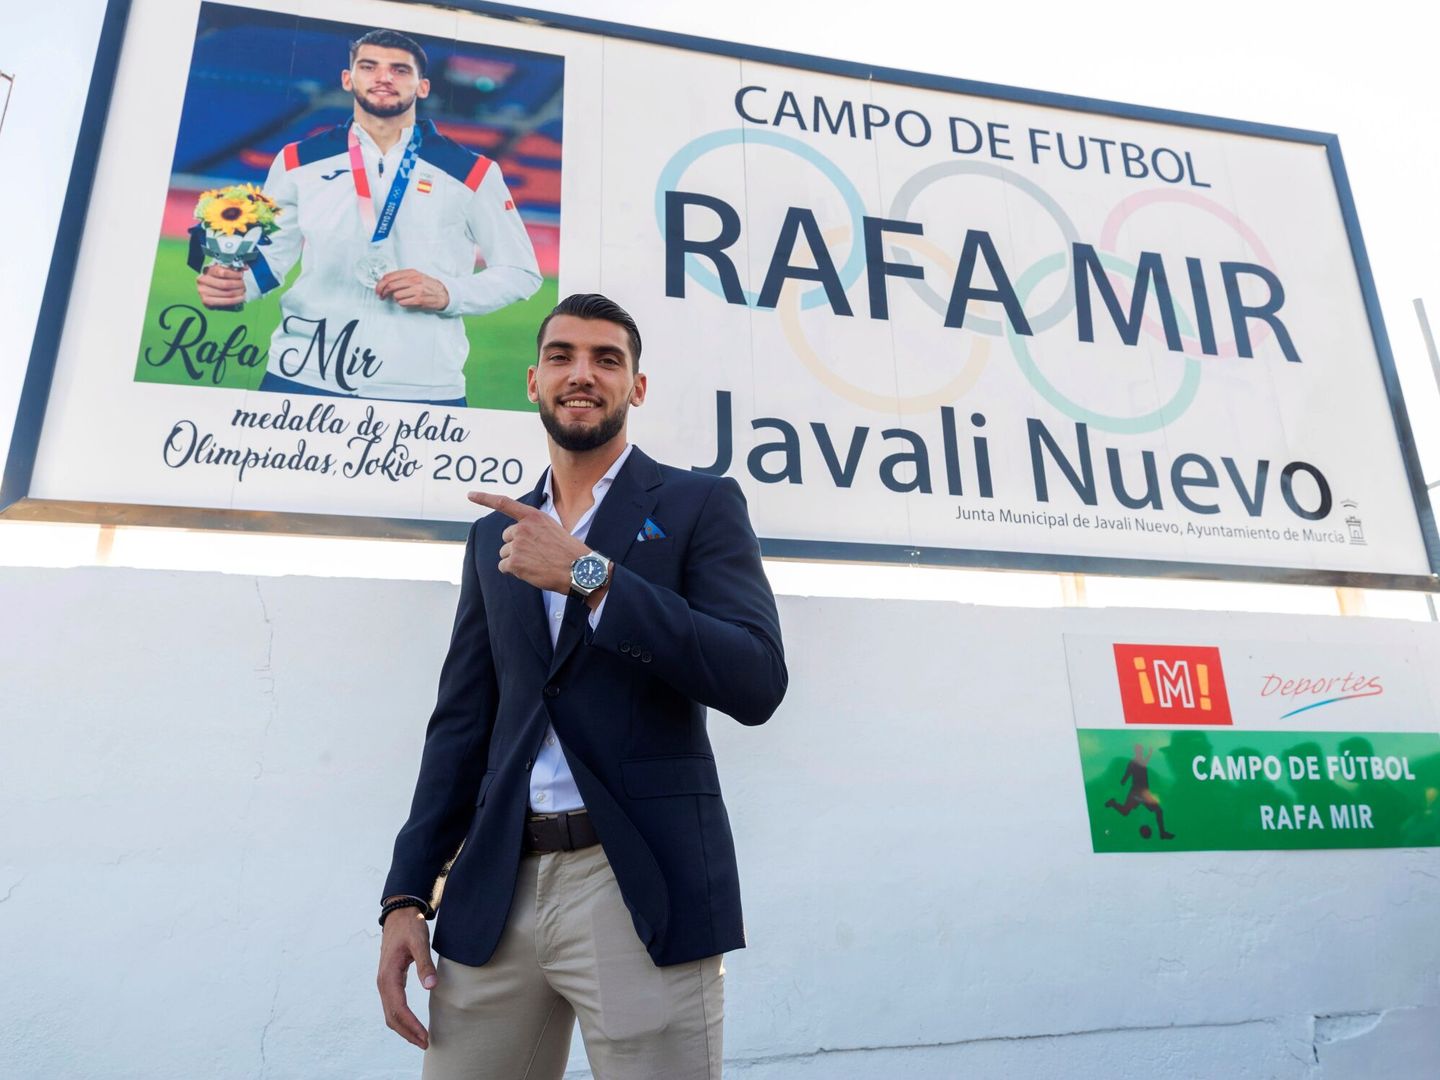 Rafa Mir da nombre al campo de fútbol en Javalí Nuevo donde empezó a jugar de niño. (Efe)